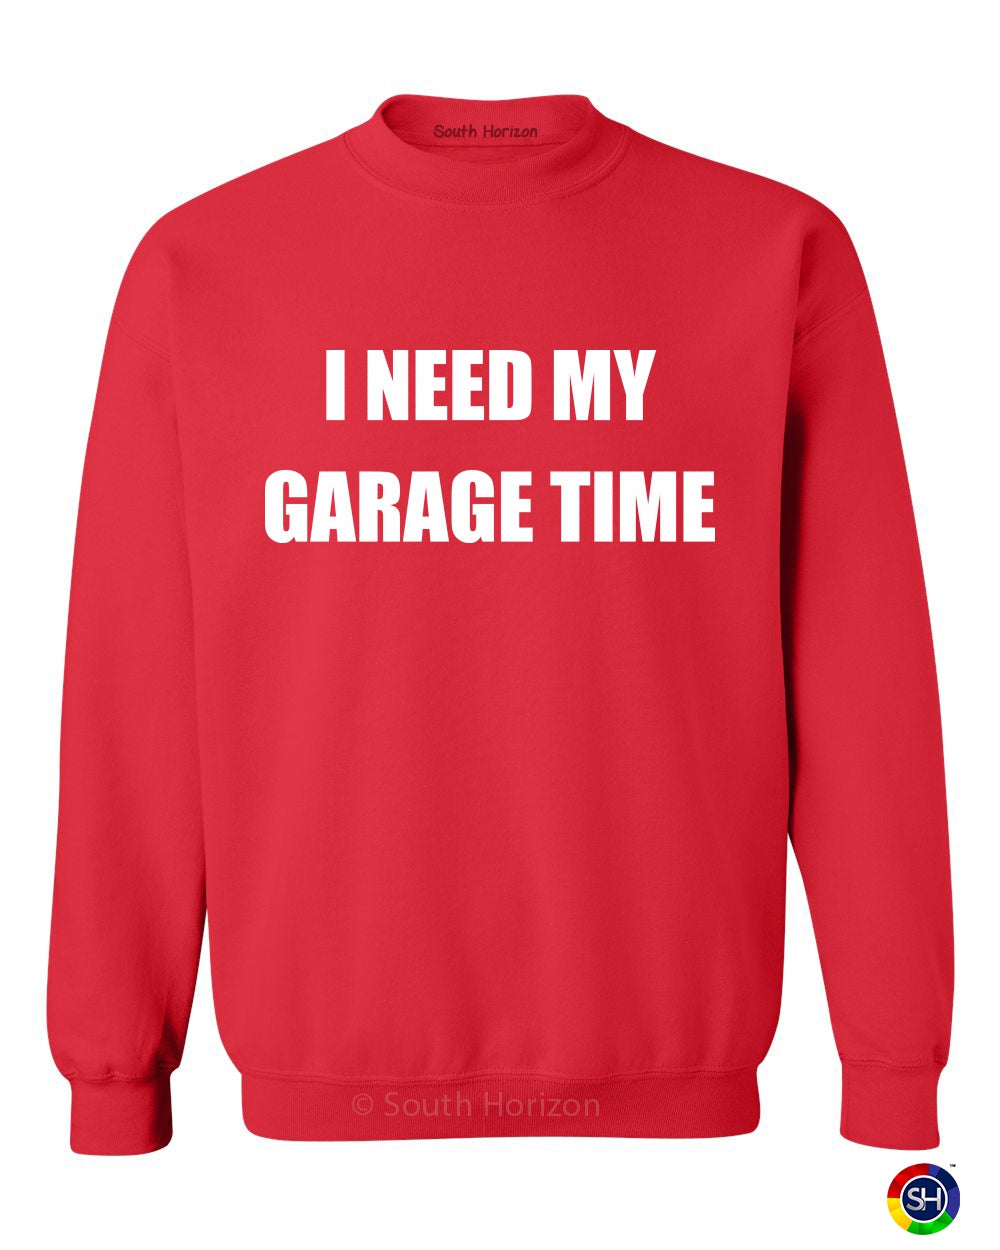 I NEED MY GARAGE TIME on SweatShirt (#720-11)